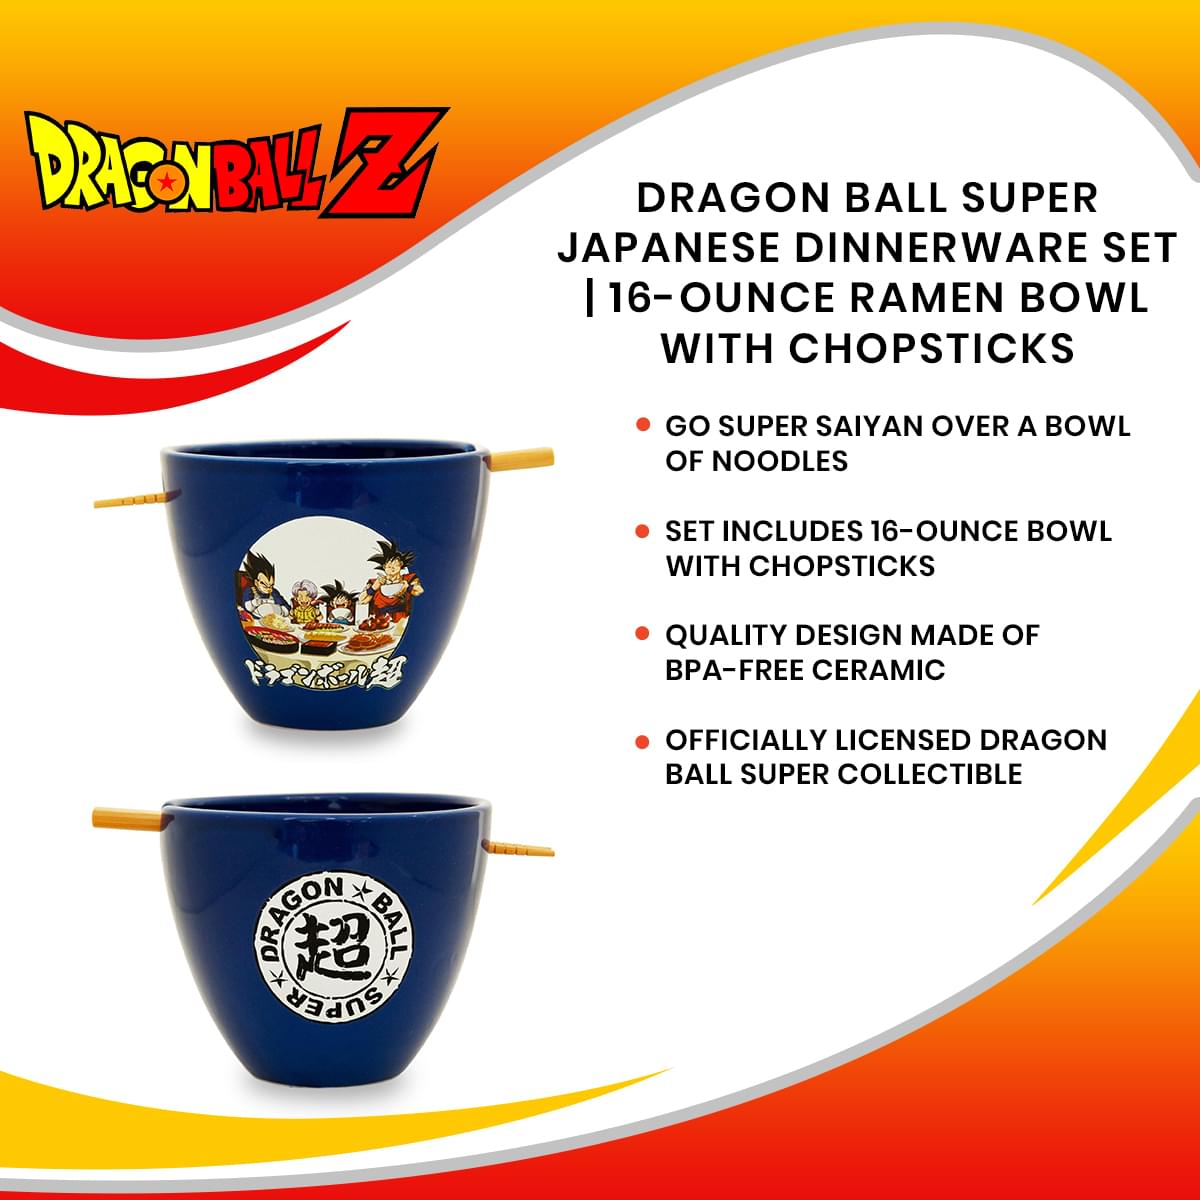 Dragon Ball Super Japanese Dinnerware Set | 16-Ounce Ramen Bowl with Chopsticks